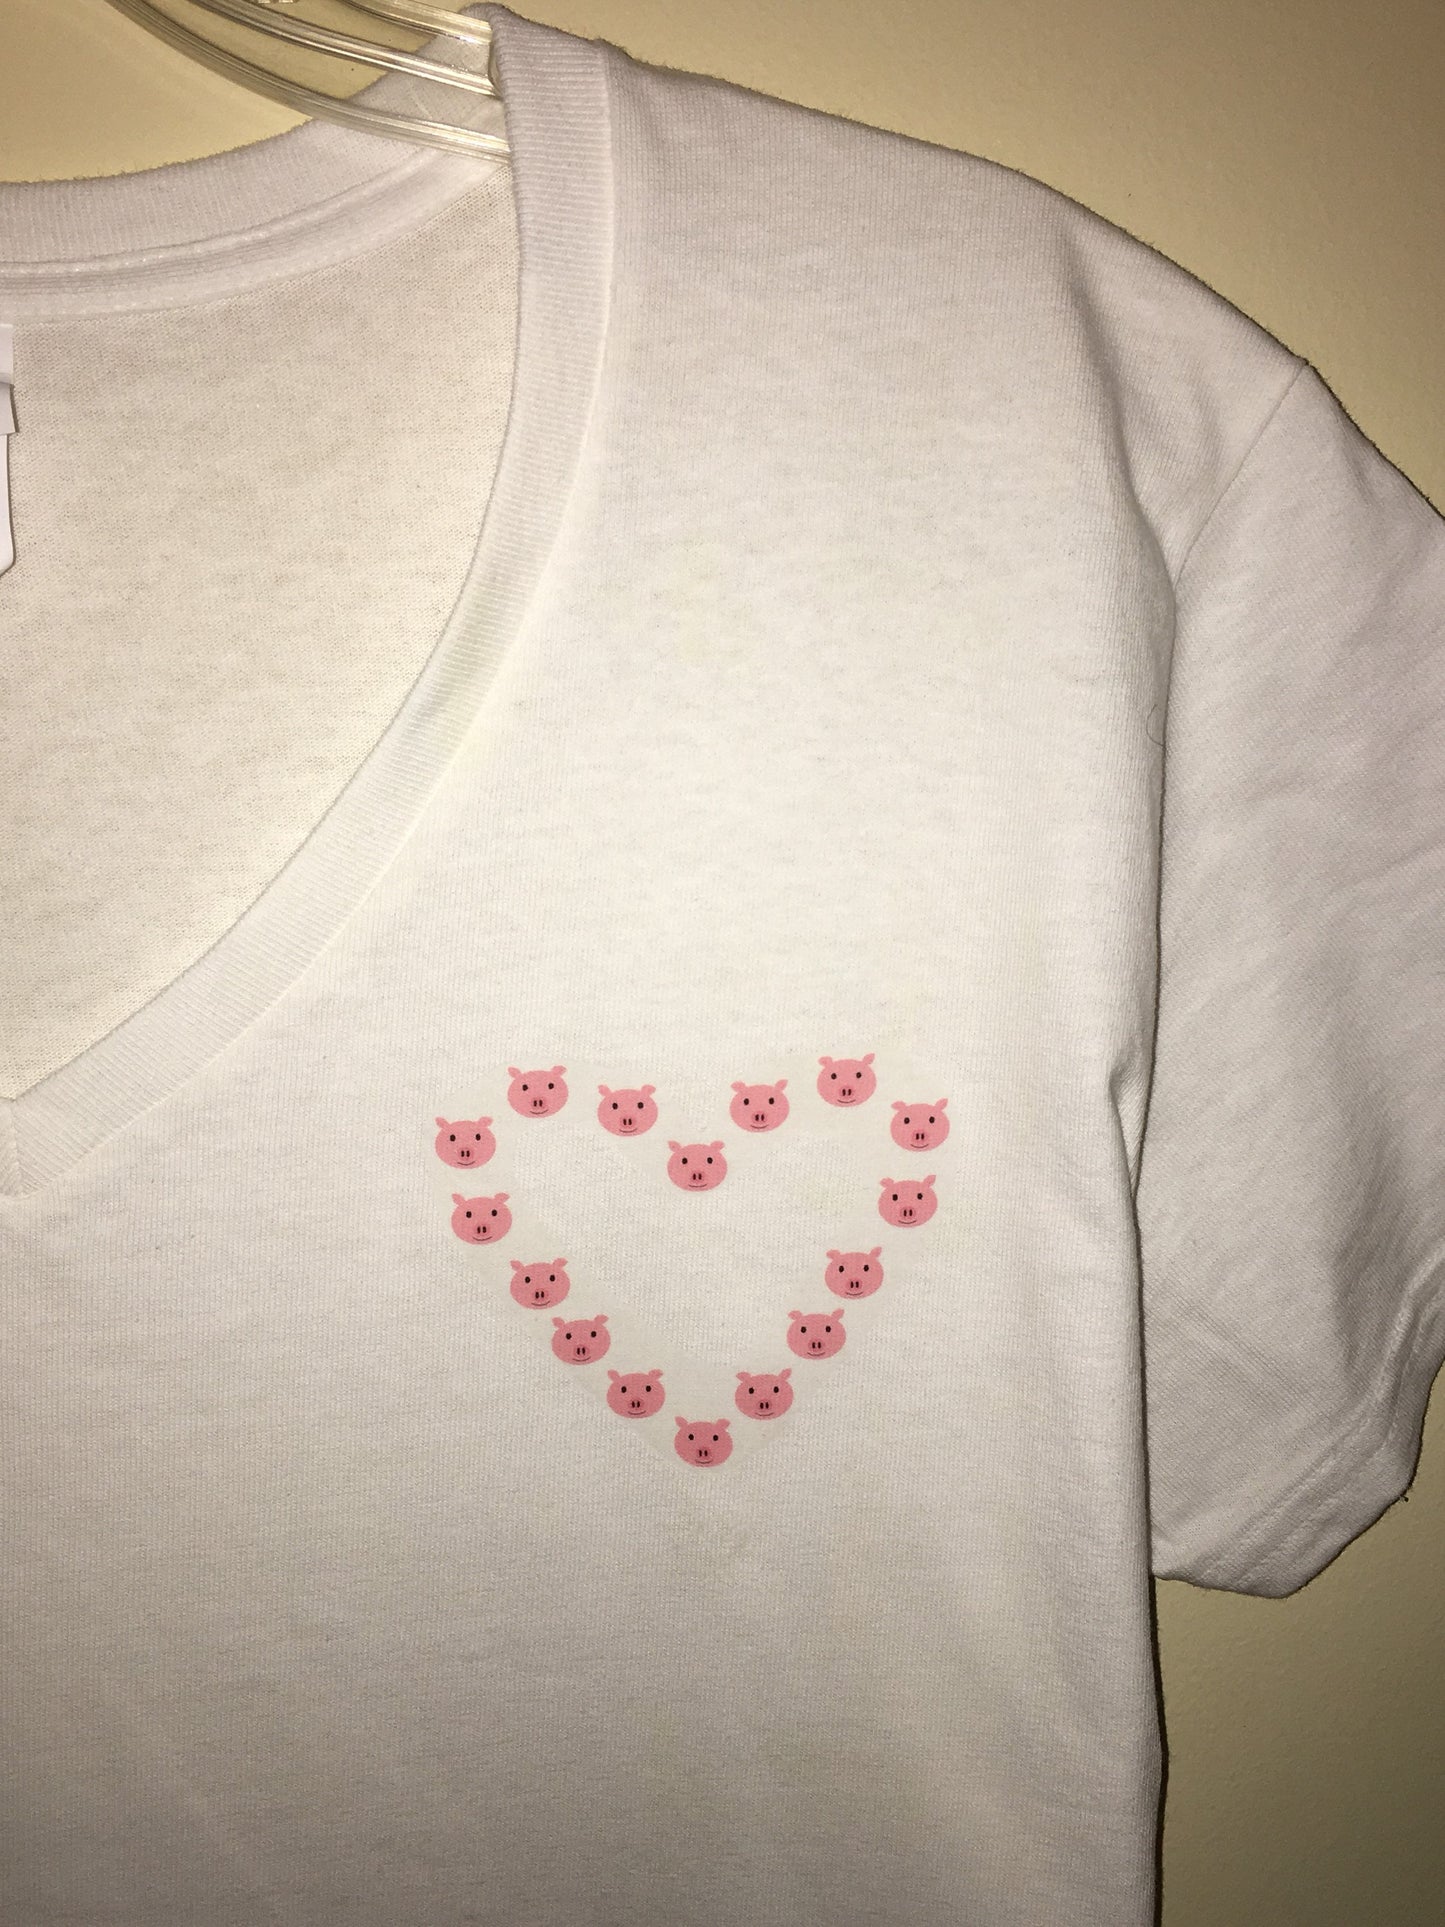 Pig Heart T-Shirt